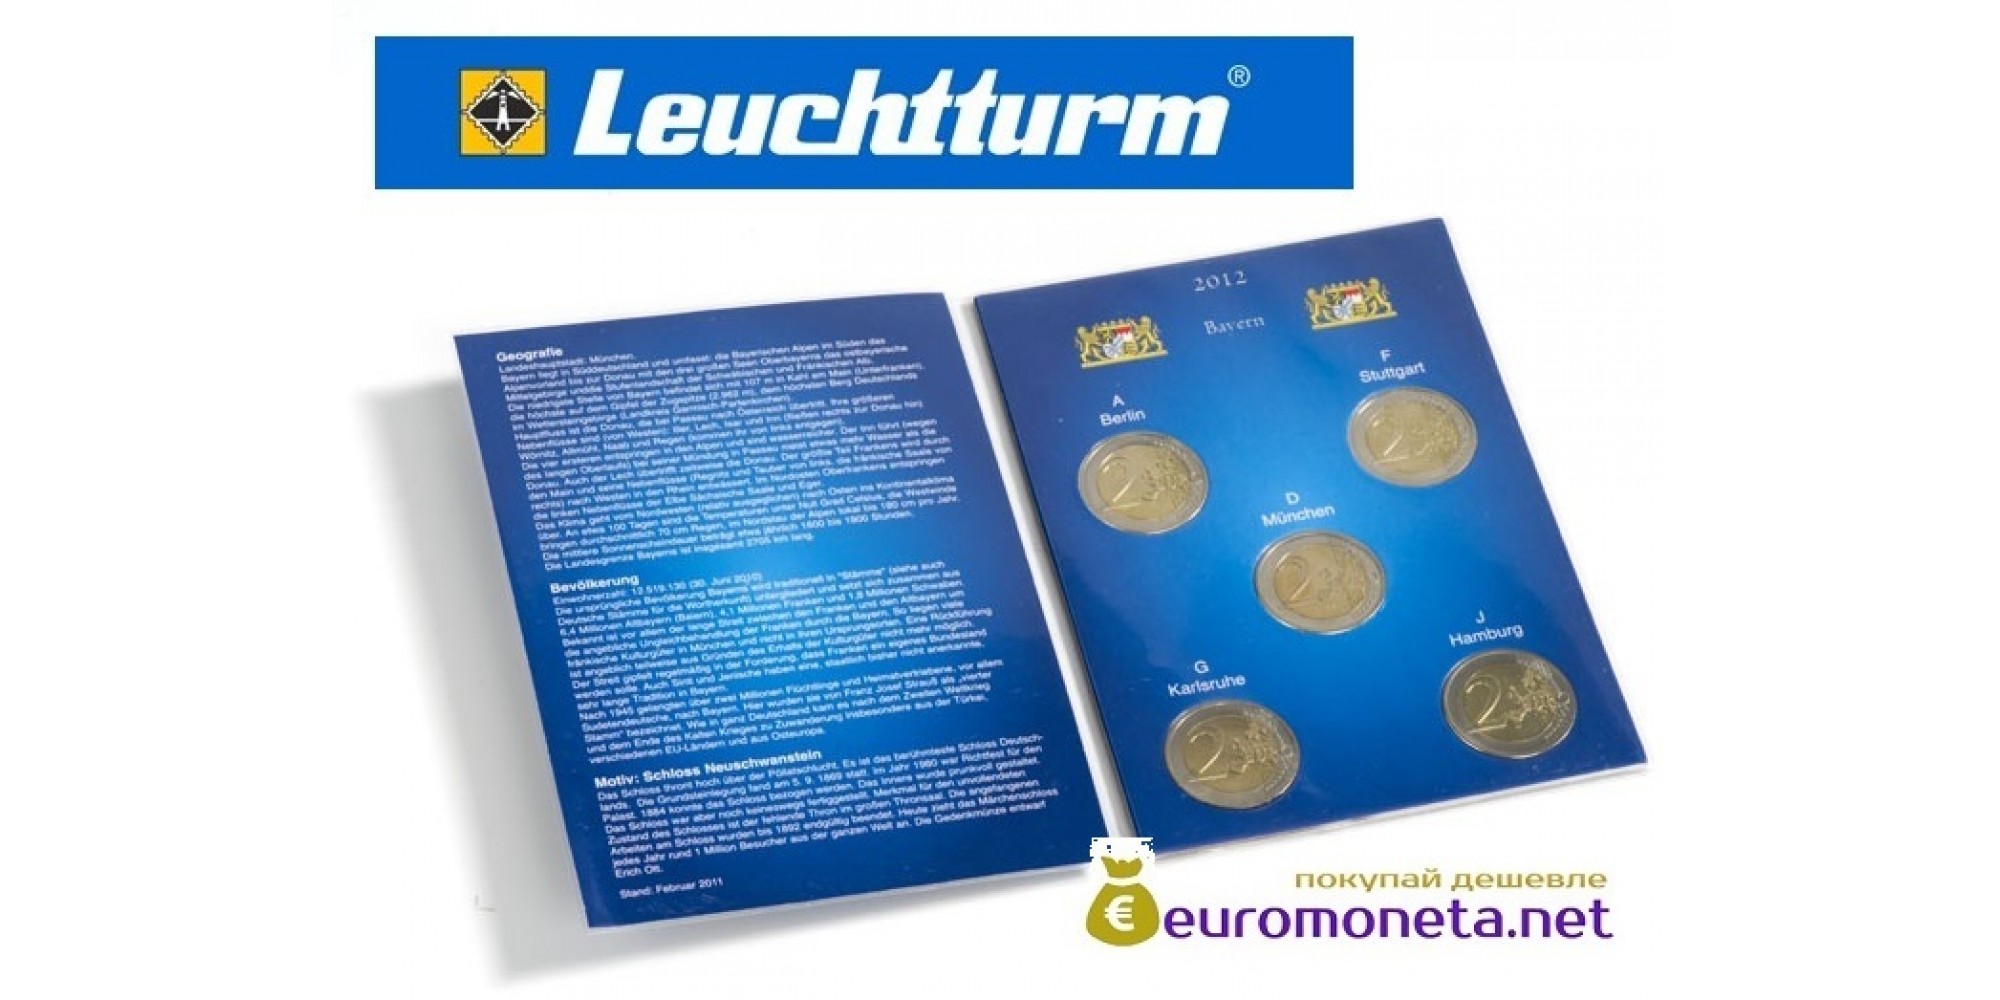 Leuchtturm буклет для хранения 5 монет 2 евро, Бавария 2012